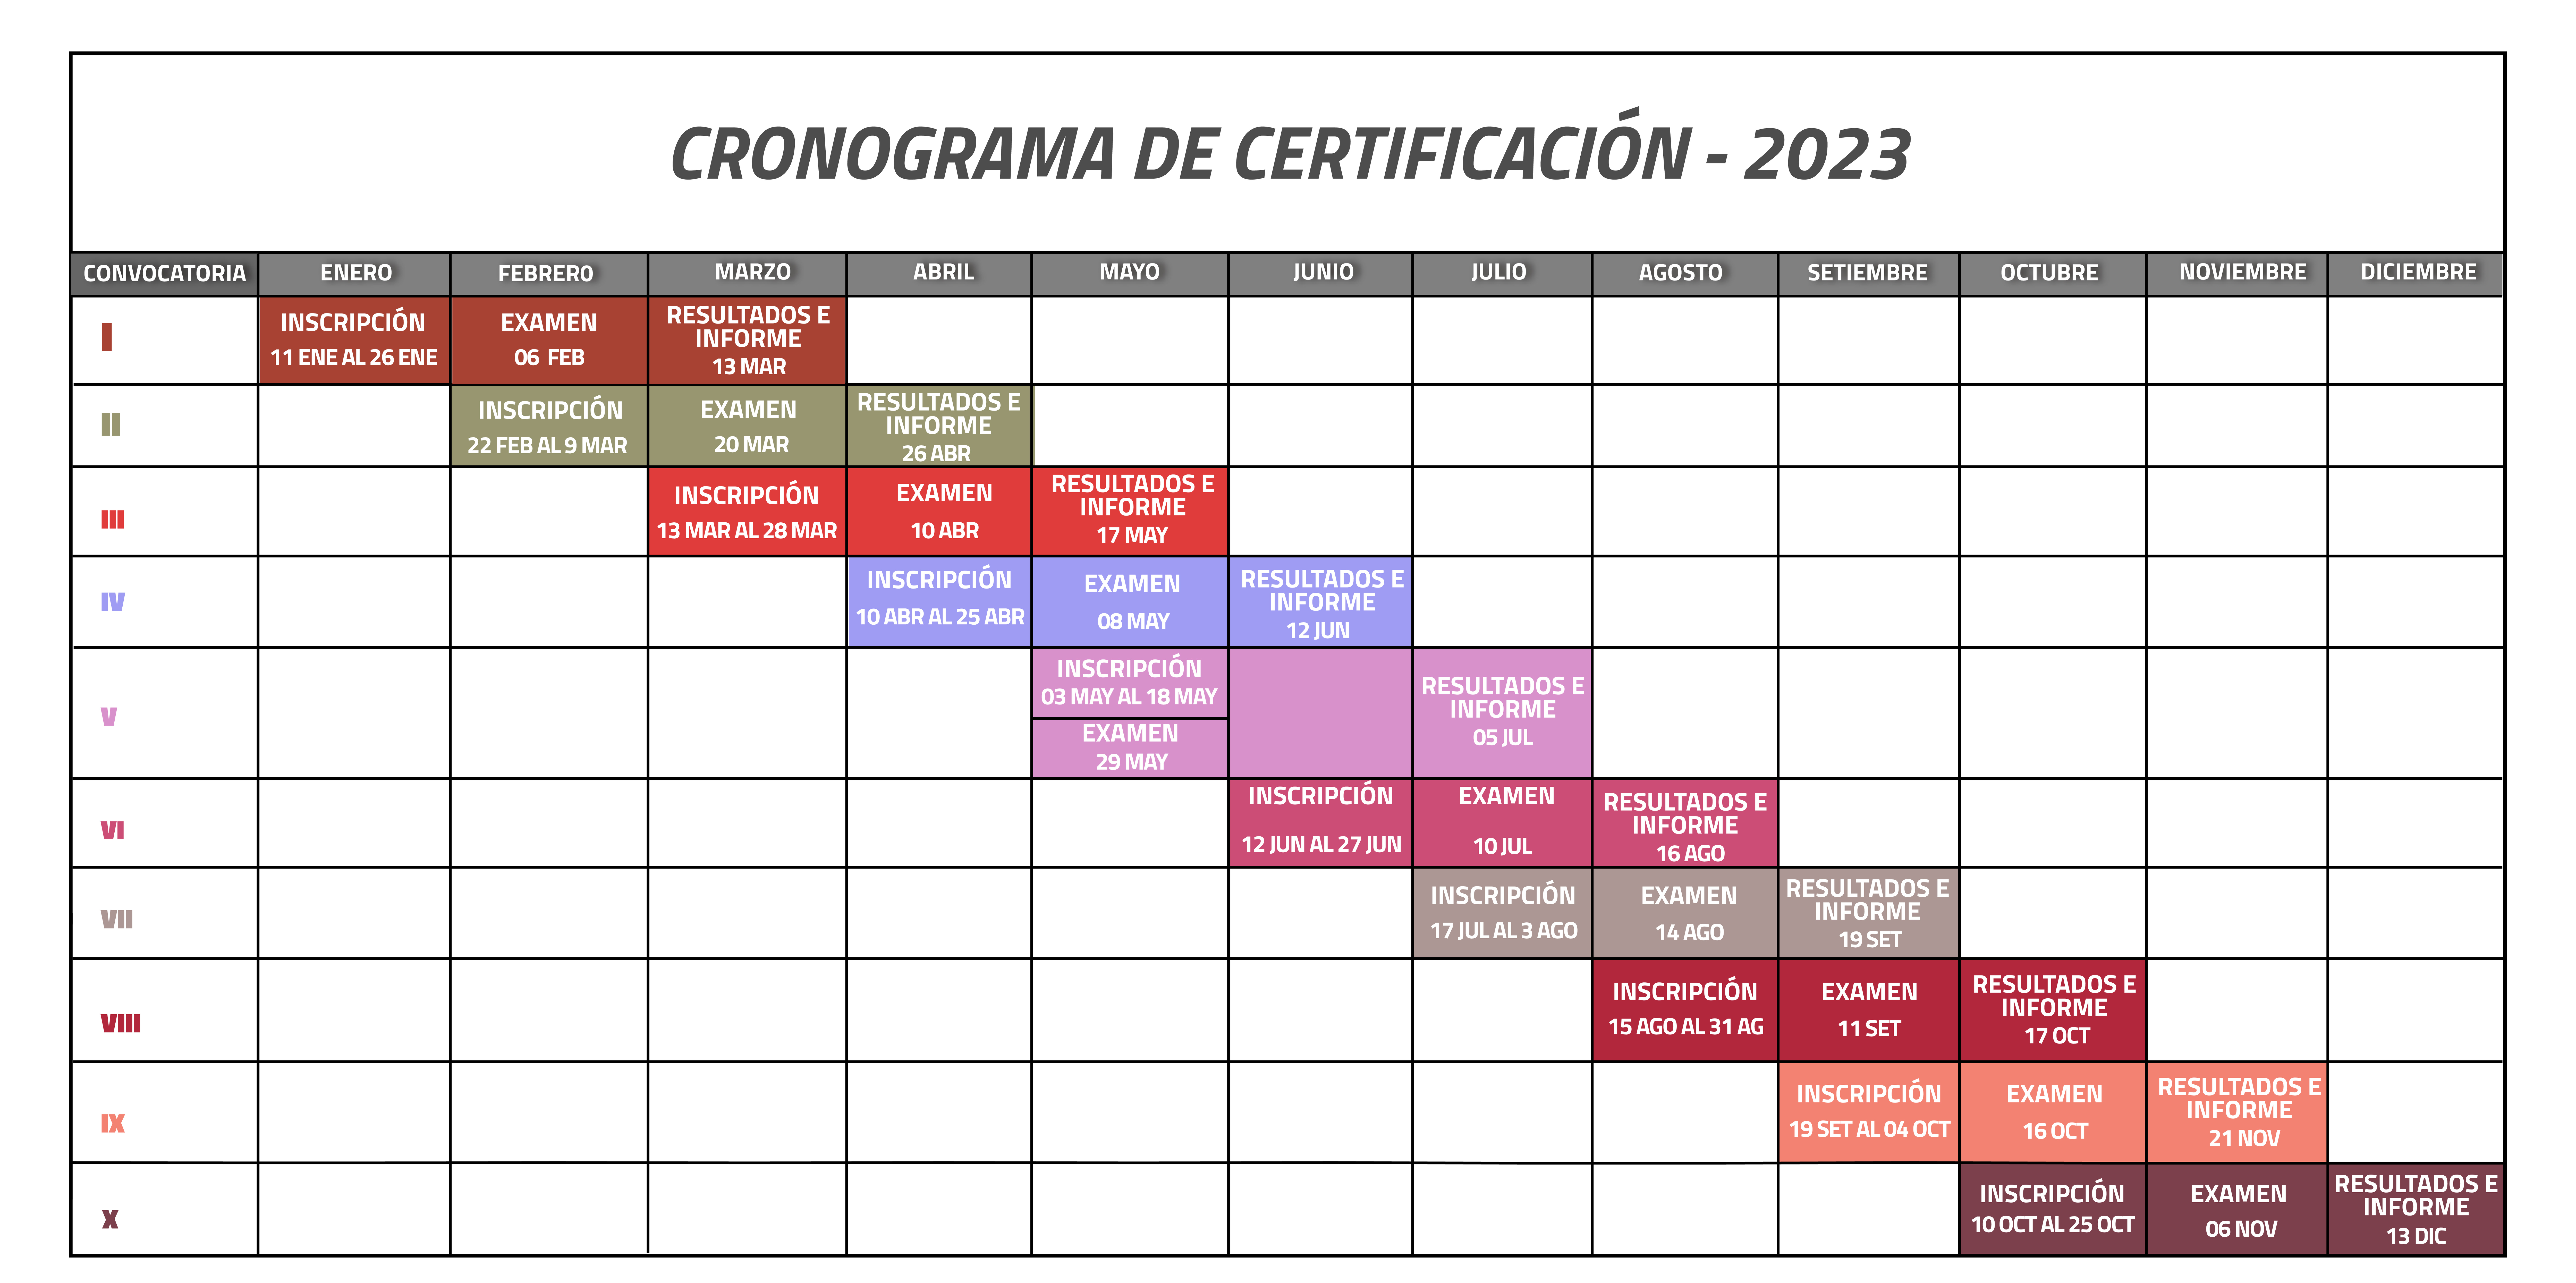  CRONOGRAMA -  PROCEDIMIENTO DE CERTIFICACIÓN - 2023